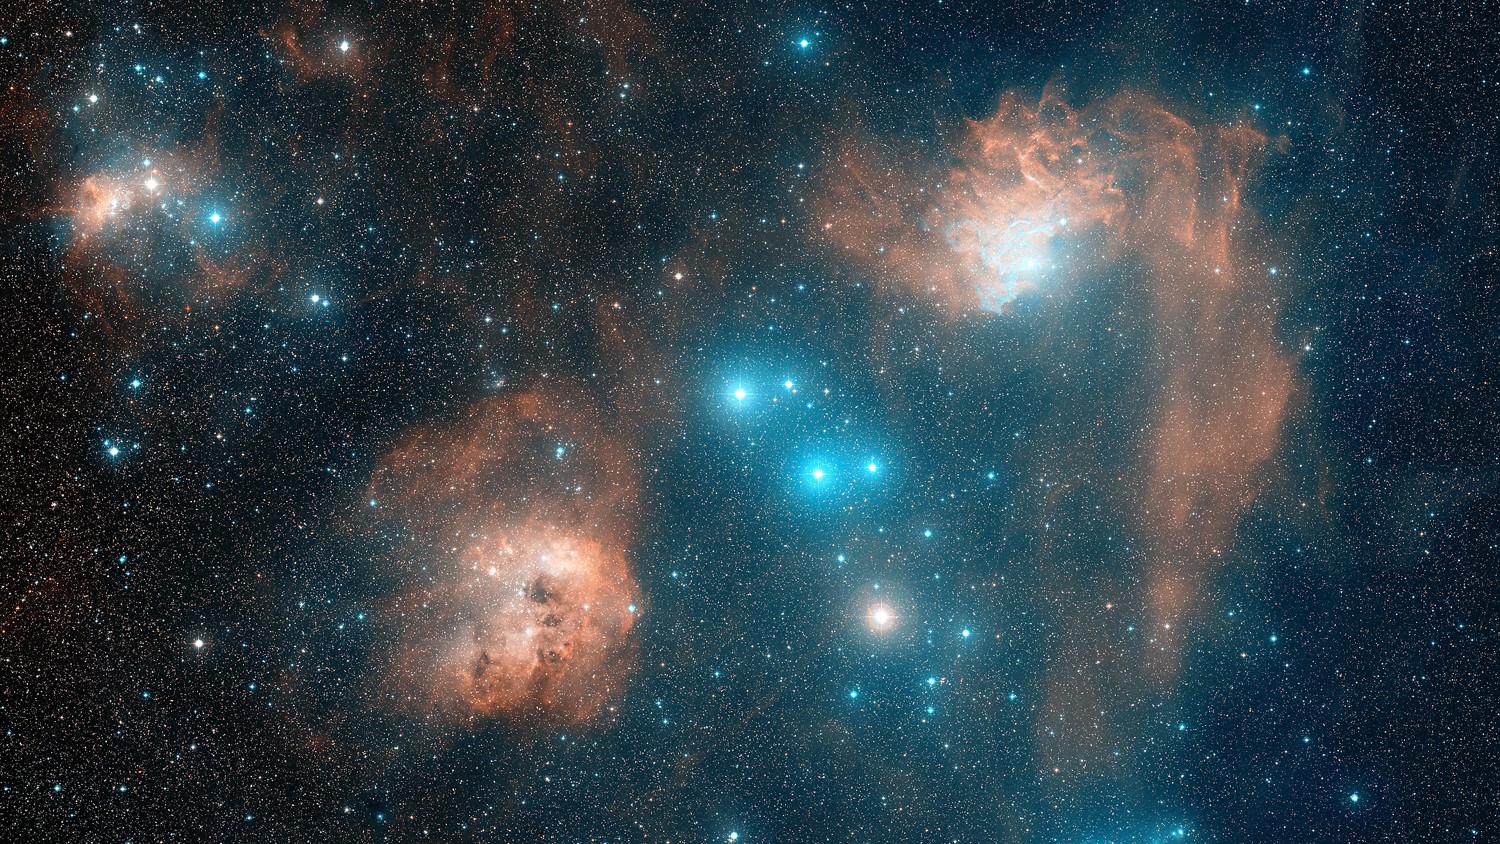 Ondulações de poeira e rotas de gás definem a Nebulosa da Estrela Flamejante. As cores vermelha e azul da nebulosa estão presentes em diversas regiões e são criadas por diferentes processos. A estrela brilhante AE Aurigae é tão quente que é azul, emitindo luz tão energética que afasta elétrons do gás circundante. Quando um próton recaptura um elétron, a luz vermelha é frequentemente emitida. A cor da região azul é uma mistura dessa luz vermelha e da luz azul emitida por AE Aurigae, mas refletida pela poeira circundante. As duas regiões são chamadas de nebulosa de emissão e nebulosa de reflexão, respectivamente. A Nebulosa da Estrela Flamejante, oficialmente conhecida como IC 405, fica a cerca de 1,5 mil anos-luz de distância, na direção da Constelação de Auriga (“O Cocheiro”)